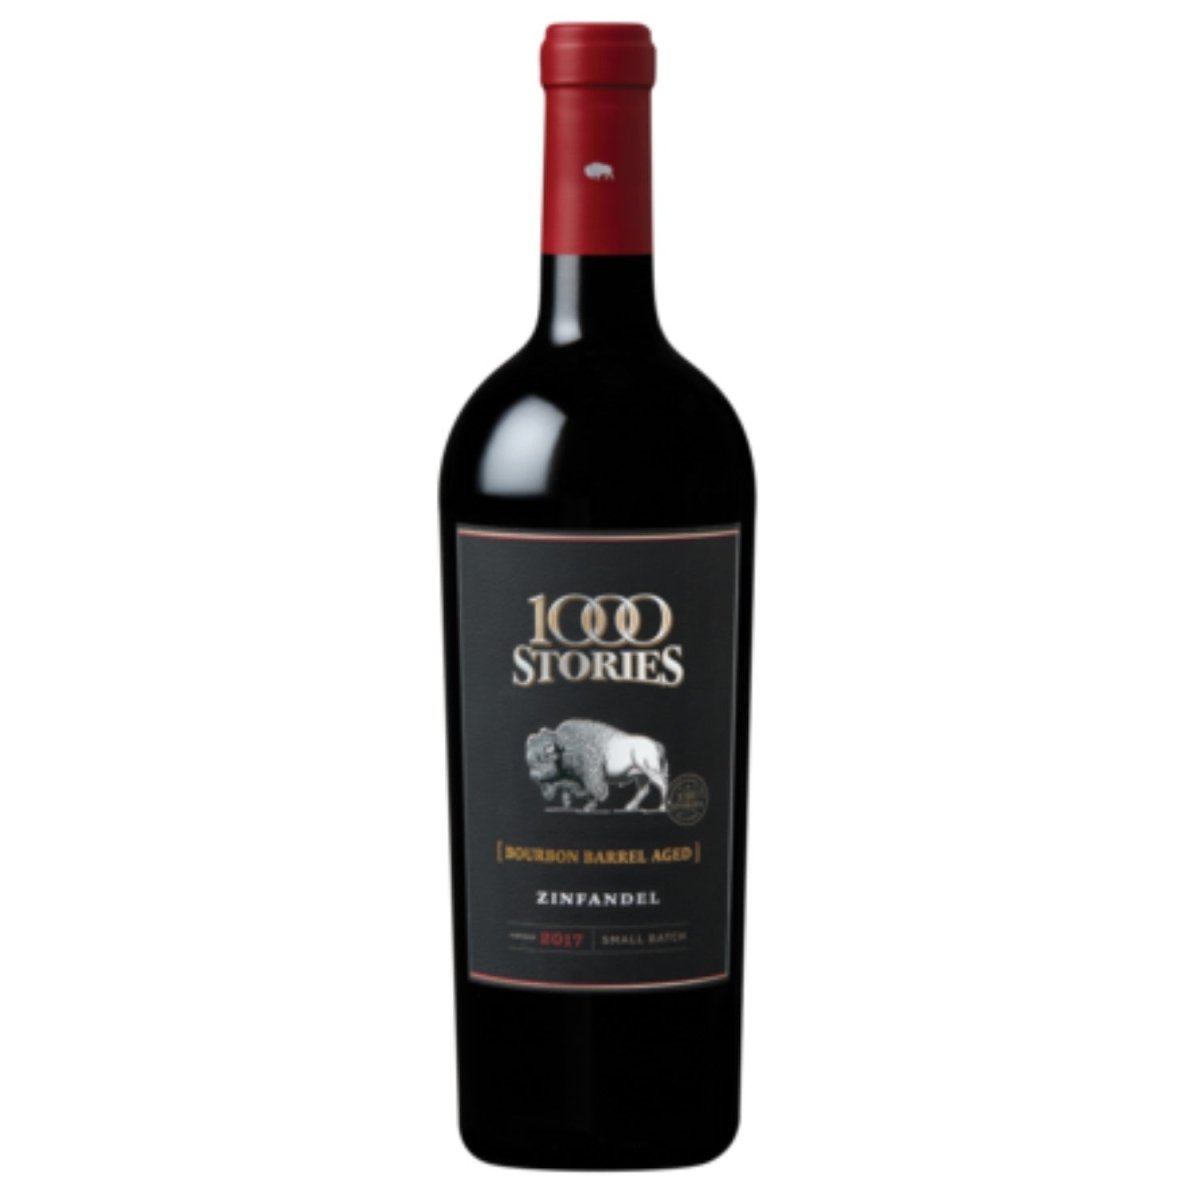 Fetzer 1000 Stories Bourbon Barrel aged Zinfandel Rotwein Wein trocken USA Kalifornien (6 x 0.75l) - Versanel -